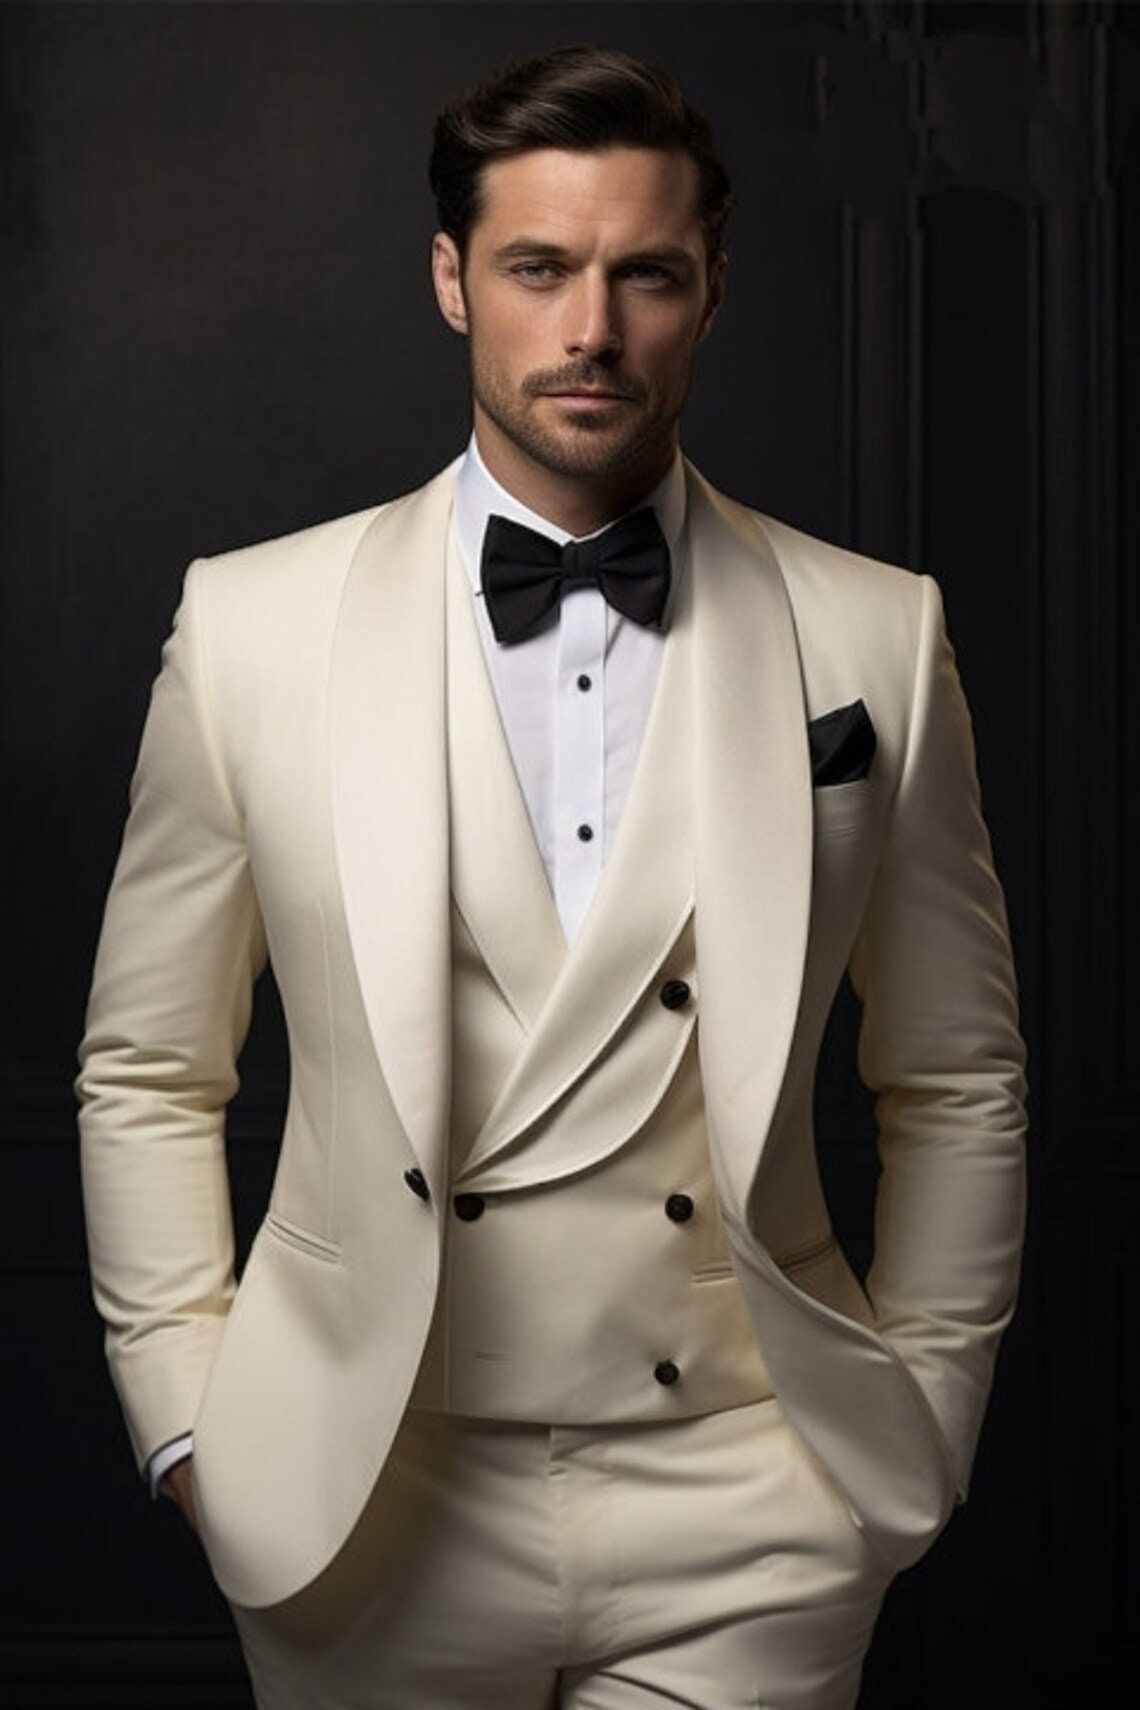 Elegant Ivory Tuxedo Suit for Men Classic Wedding Suit Tailored Suit ...